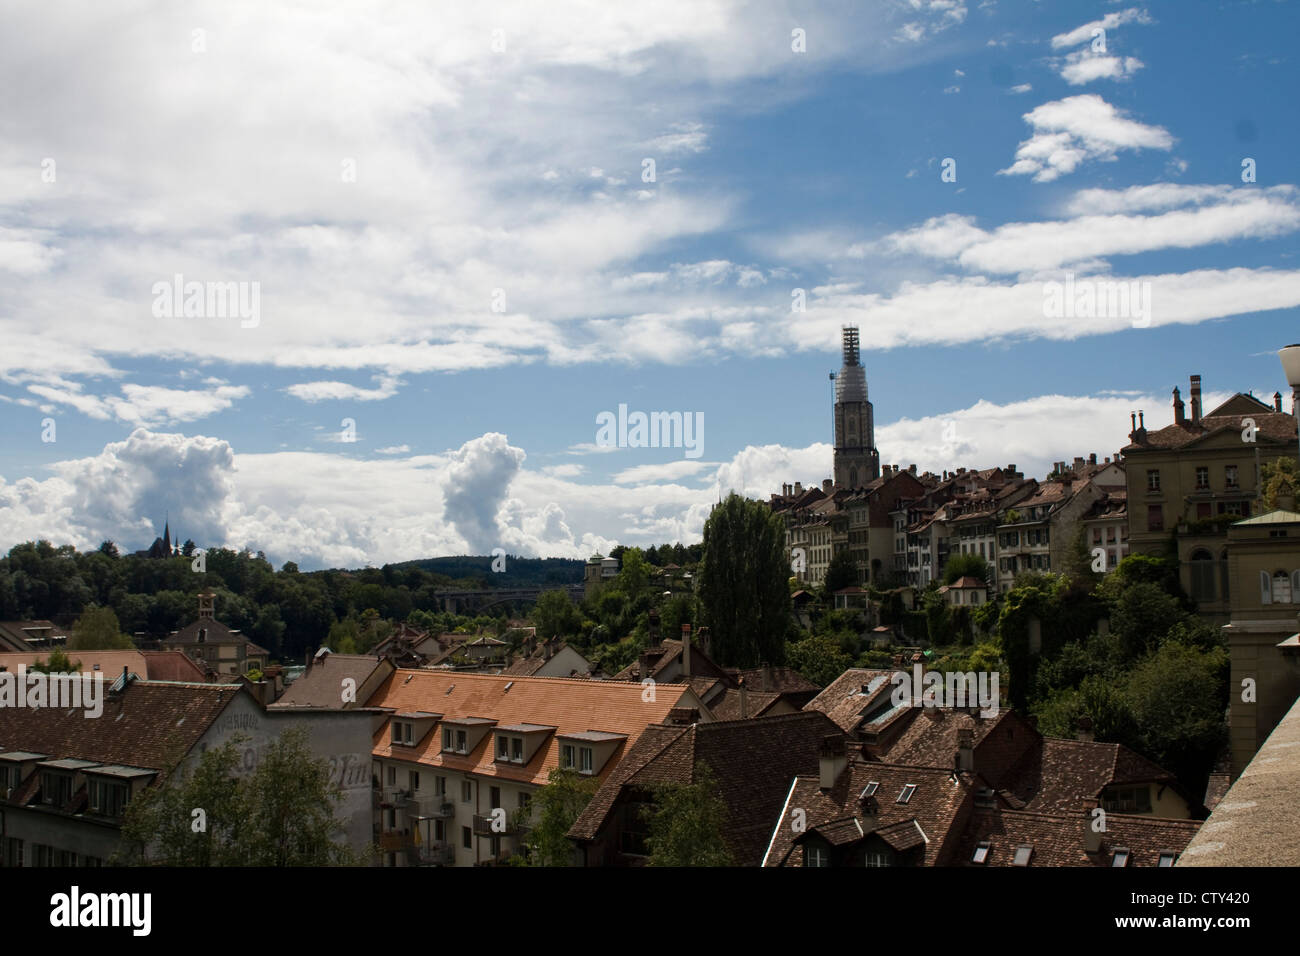 Bern, Swiss city view Stock Photo